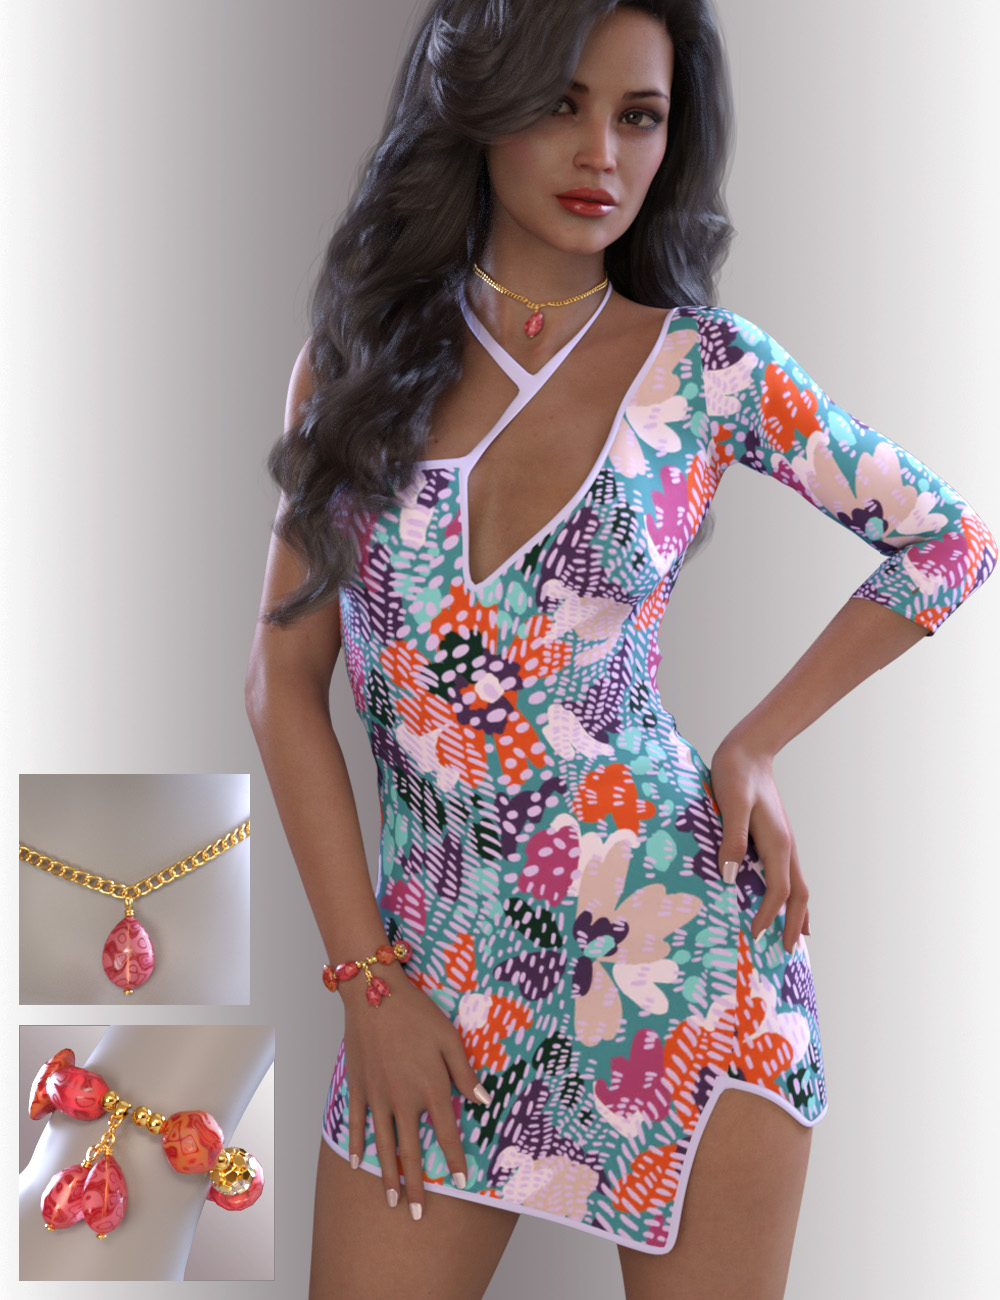 dForce Leela Dress for Genesis 8.1 Females by: OnnelArryn, 3D Models by Daz 3D